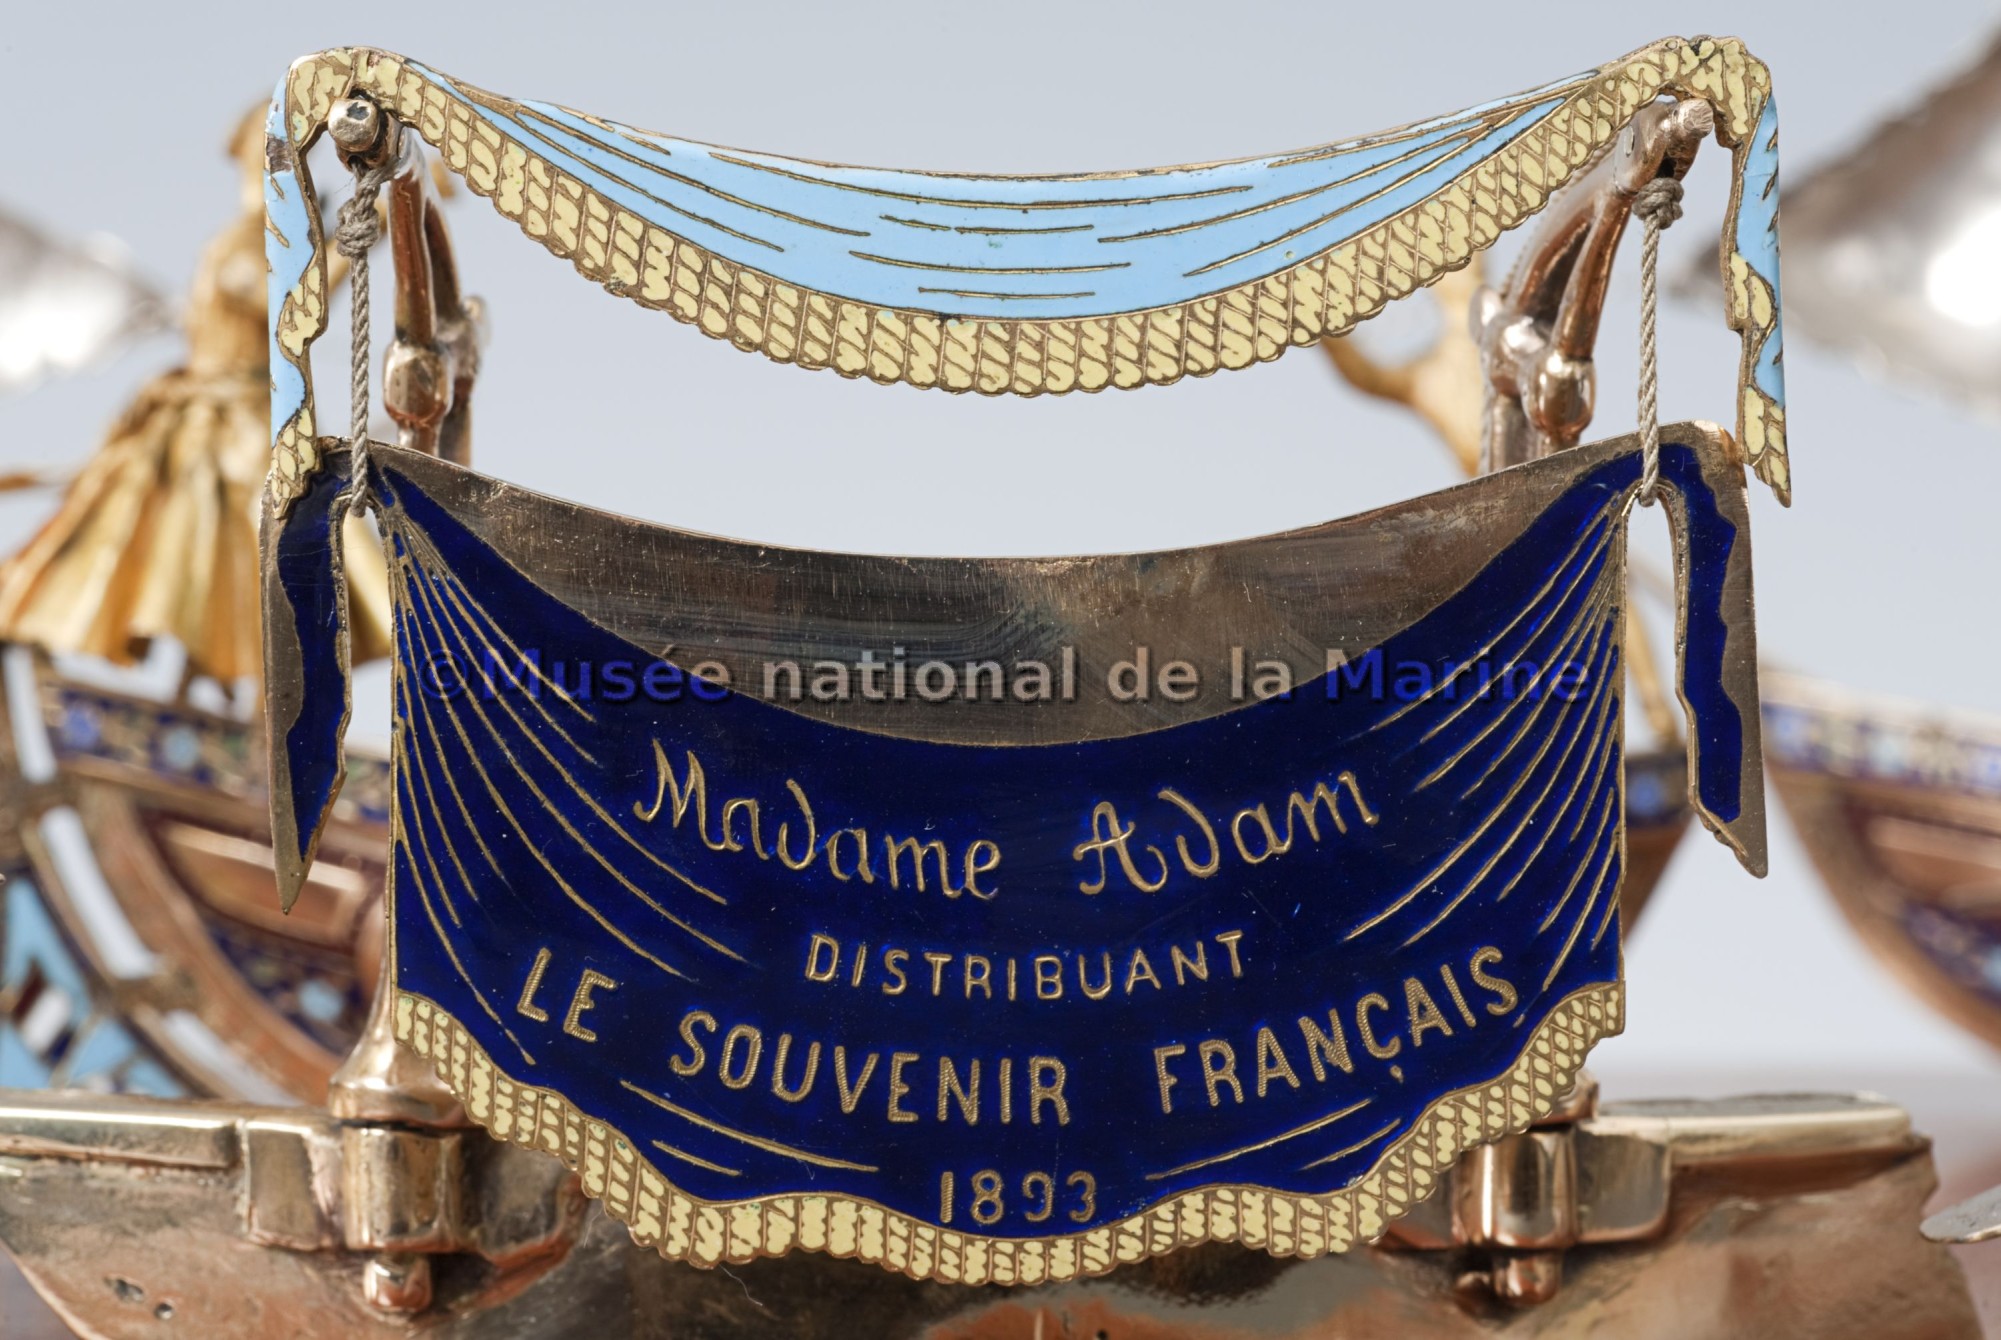 Diorama (détail) : Madame Adam distribuant le souvenir Français, 1893